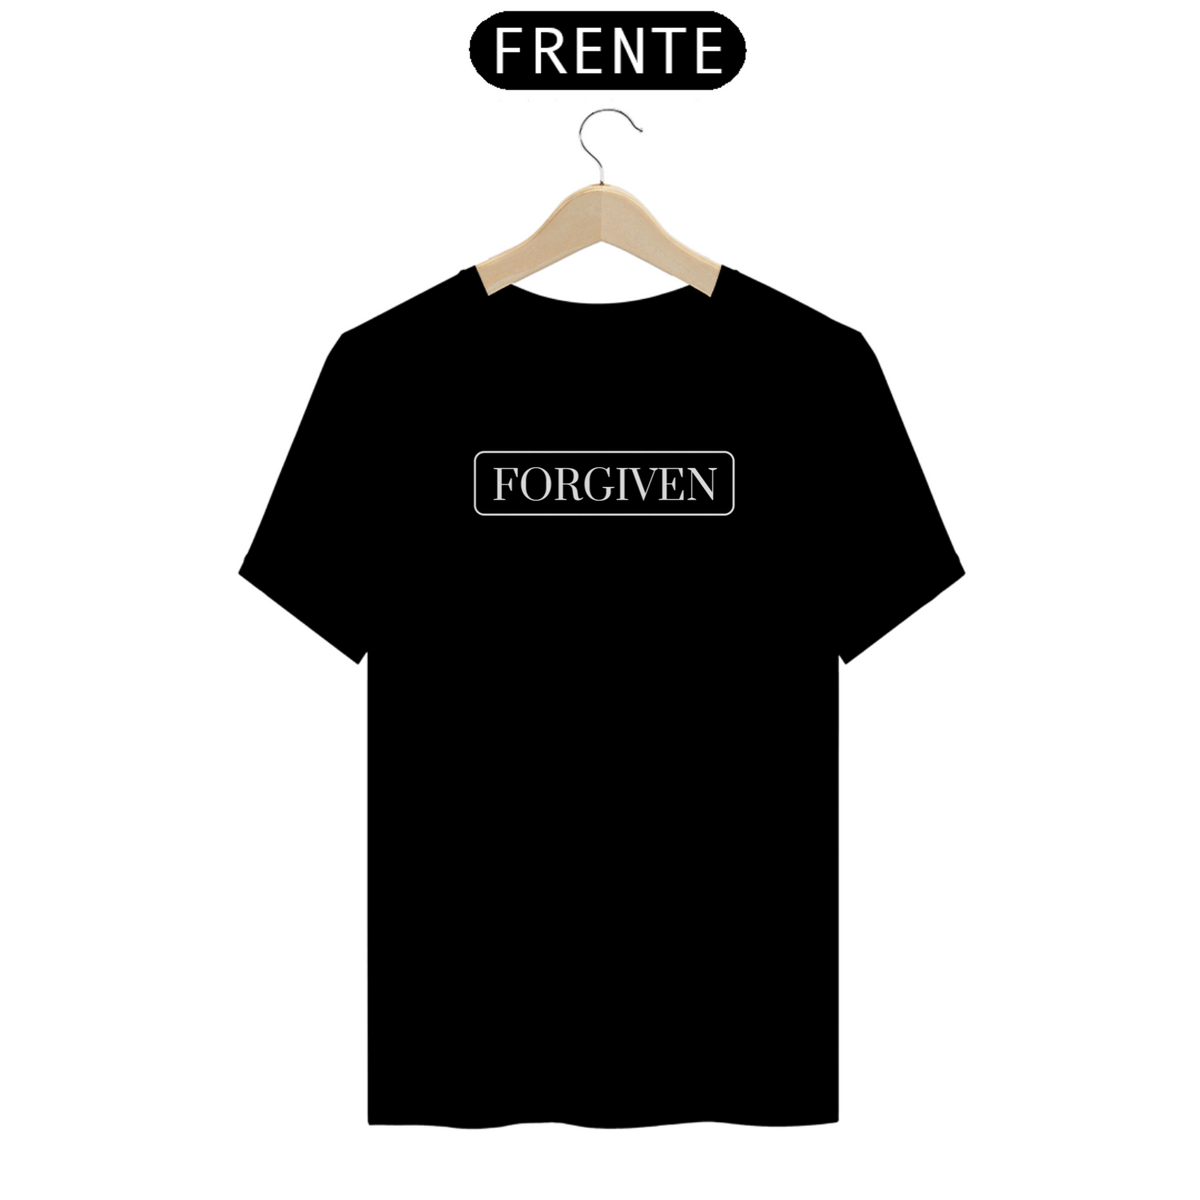 Nome do produto: T-Shirt Quality - Forgiven